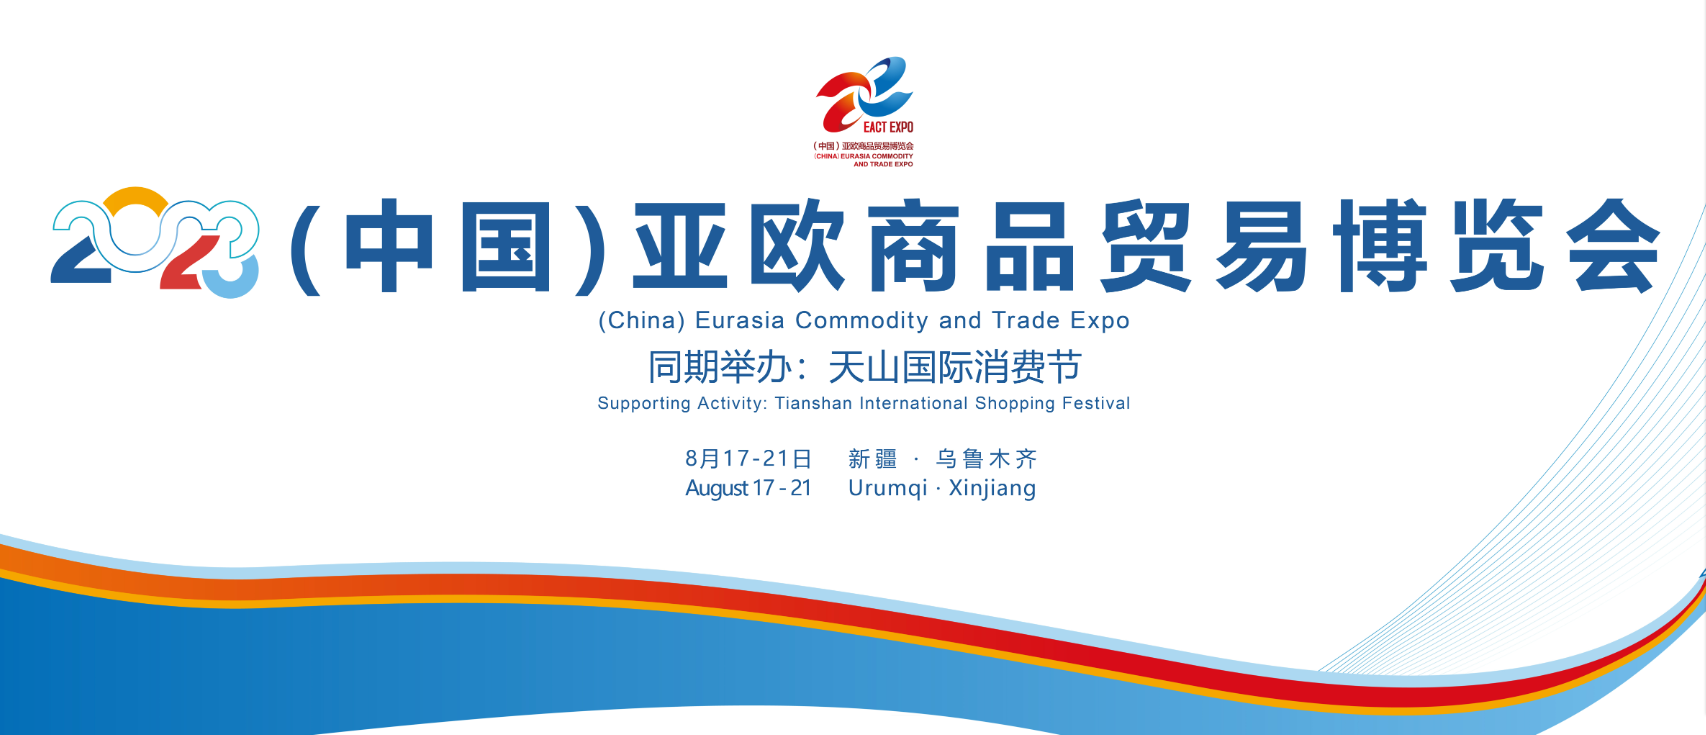 SFQ sal die nuutste energiebergingsoplossings by China-Eurasia Expo ten toon stel